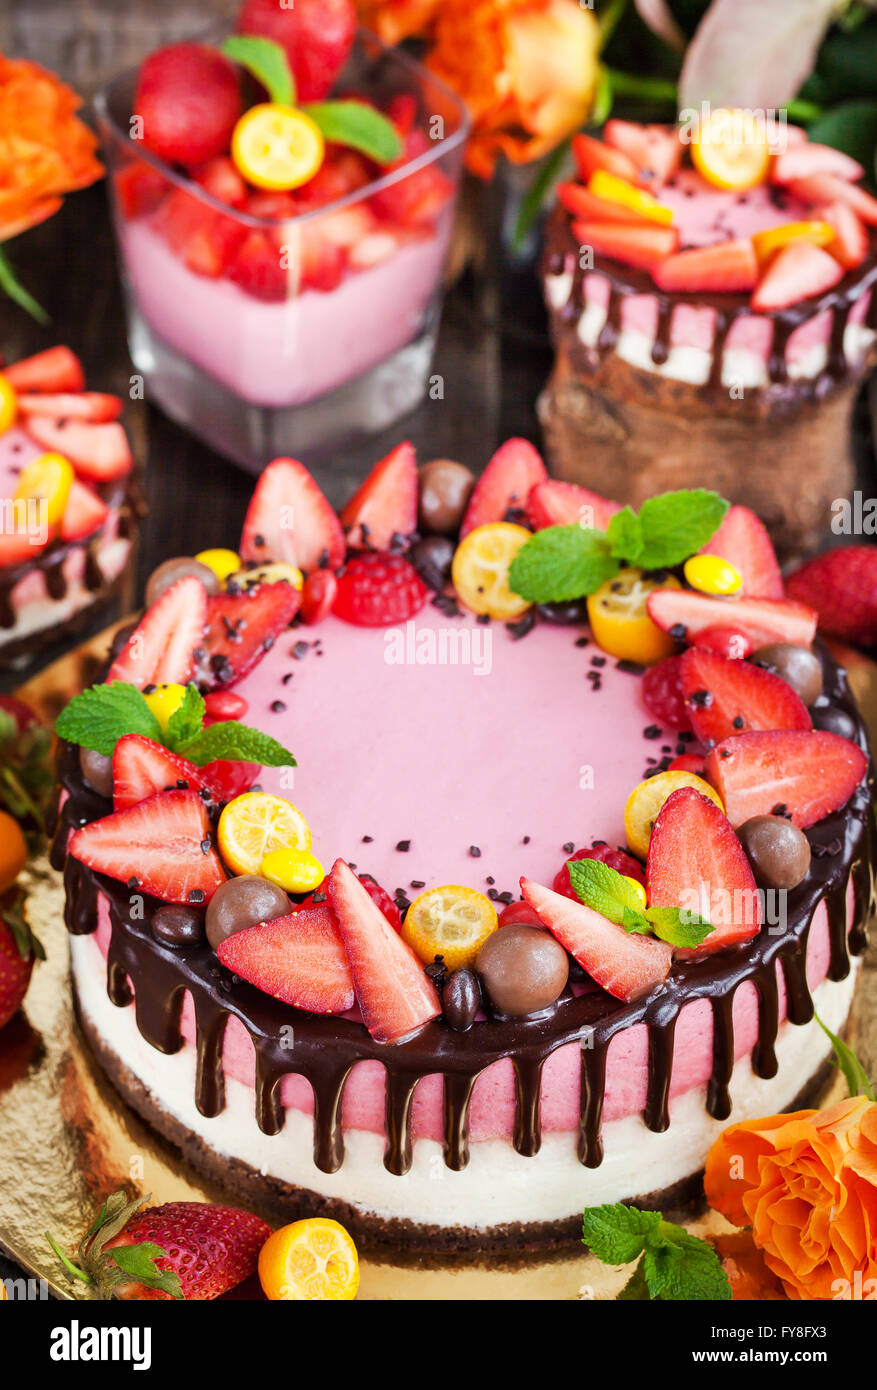 Deliciosa dos telas de Strawberry Cheesecake (pastel) decoradas con chocolate y bayas frescas Foto de stock